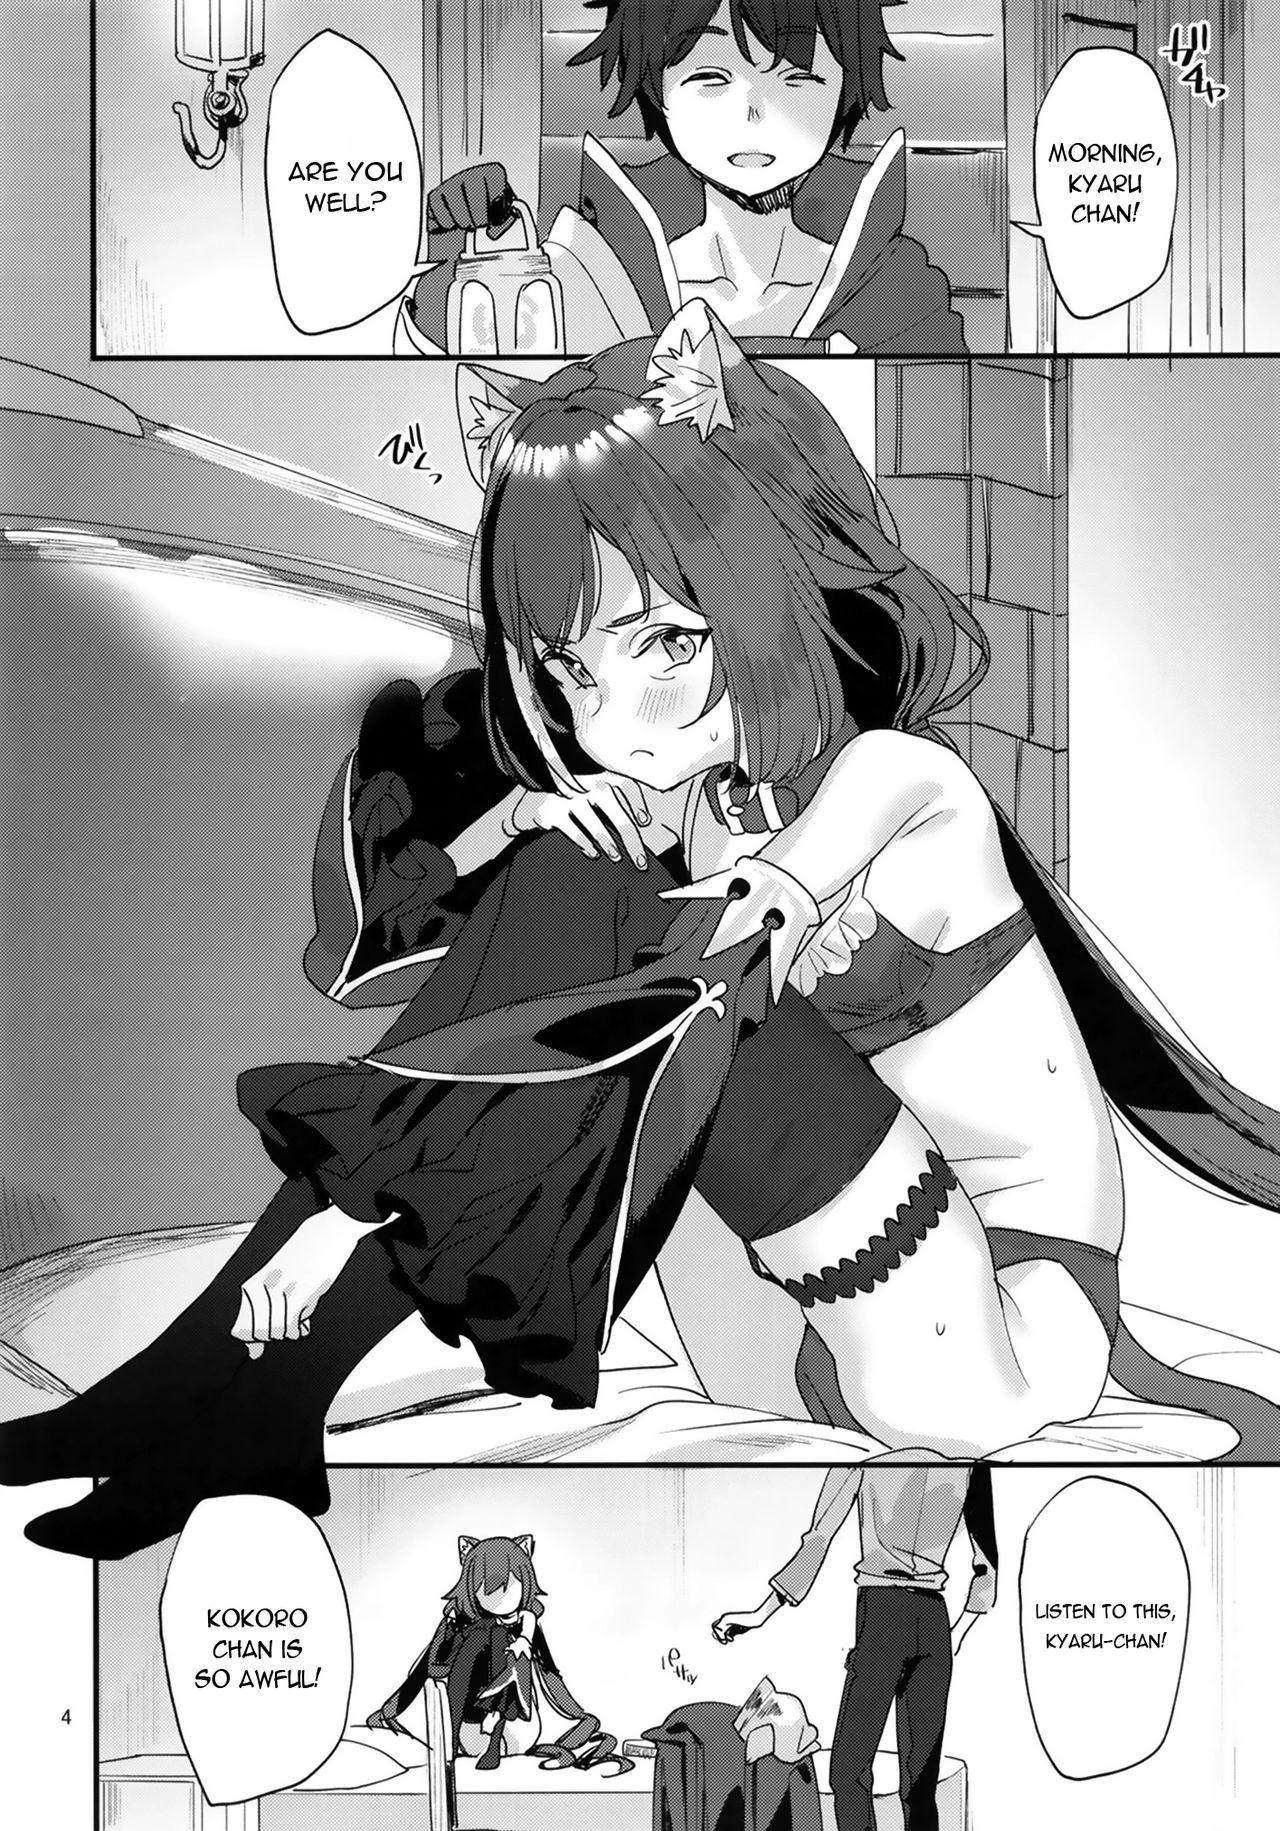 Defloration Ohayou, Kyaru-chan - Princess connect Gang Bang - Page 4